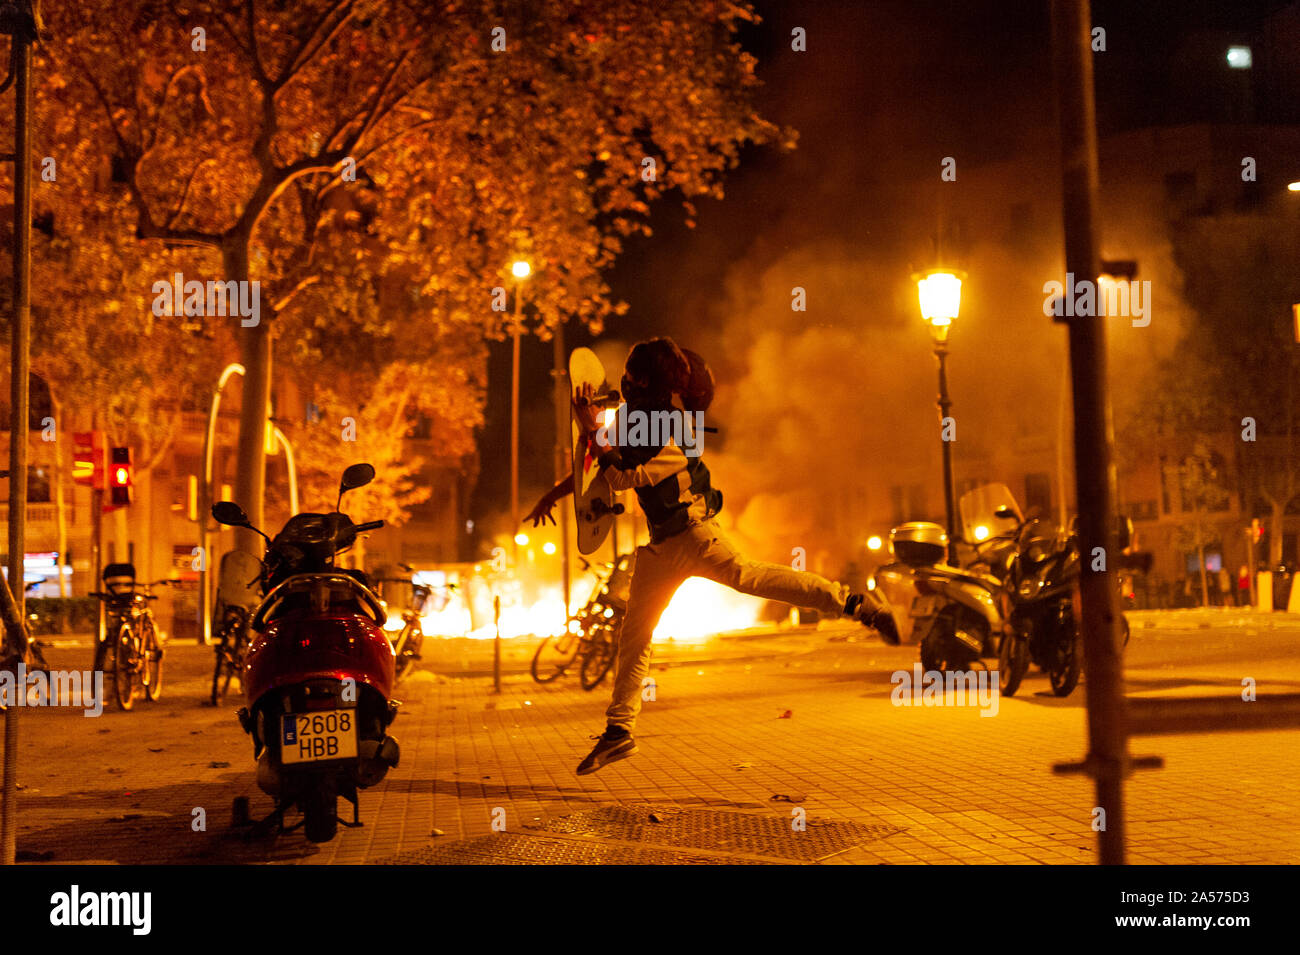 Barcellona, Spagna - 18 ottobre 2019: il giovane catalano mascherato lanciare bottiglie e pietre contro la polizia durante scontri per la Catalogna indipendenza di notte provocando r Foto Stock